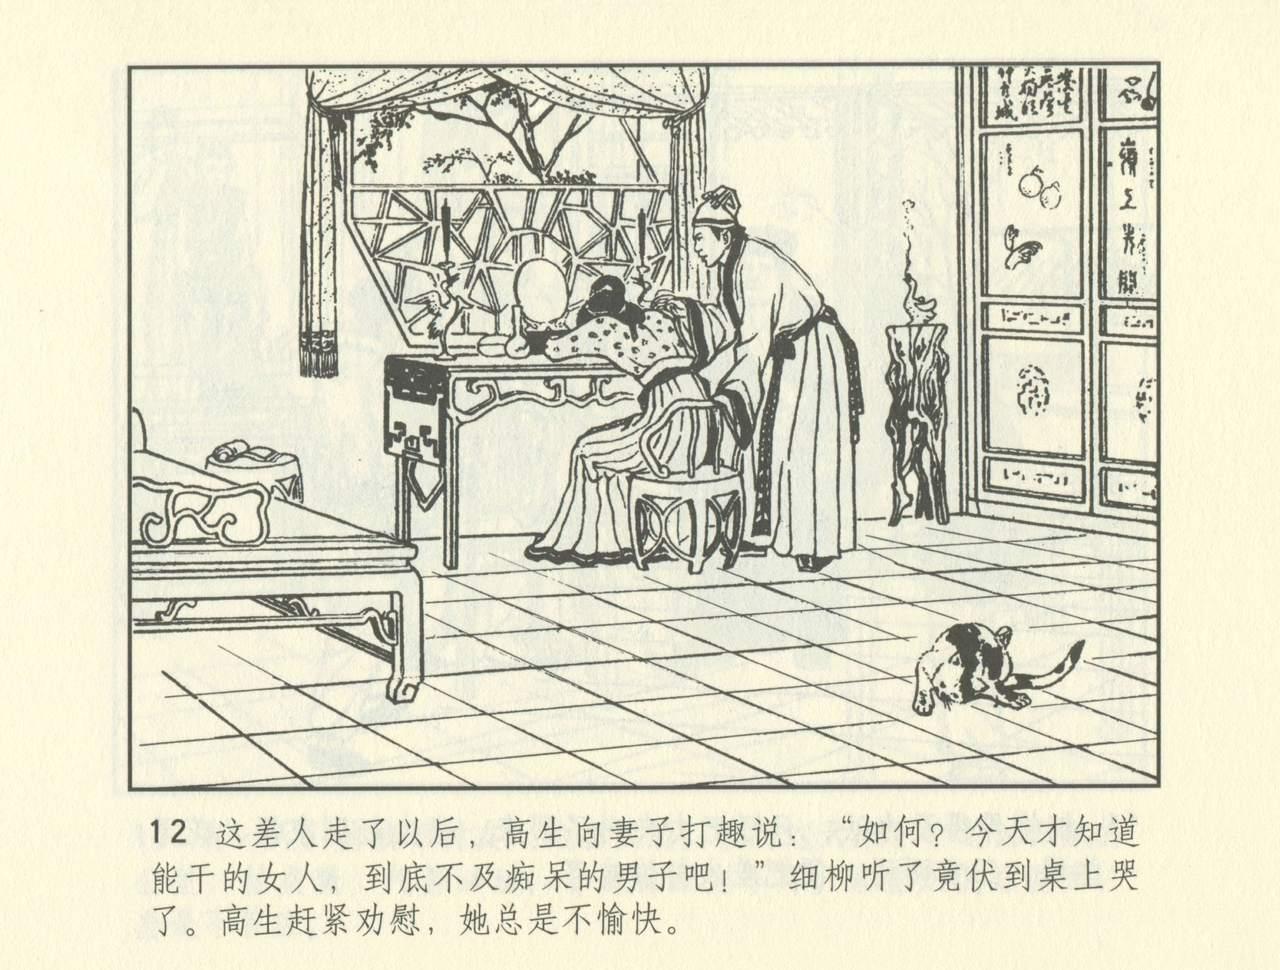 聊斋志异 张玮等绘 天津人民美术出版社 卷二十一 ~ 三十 484